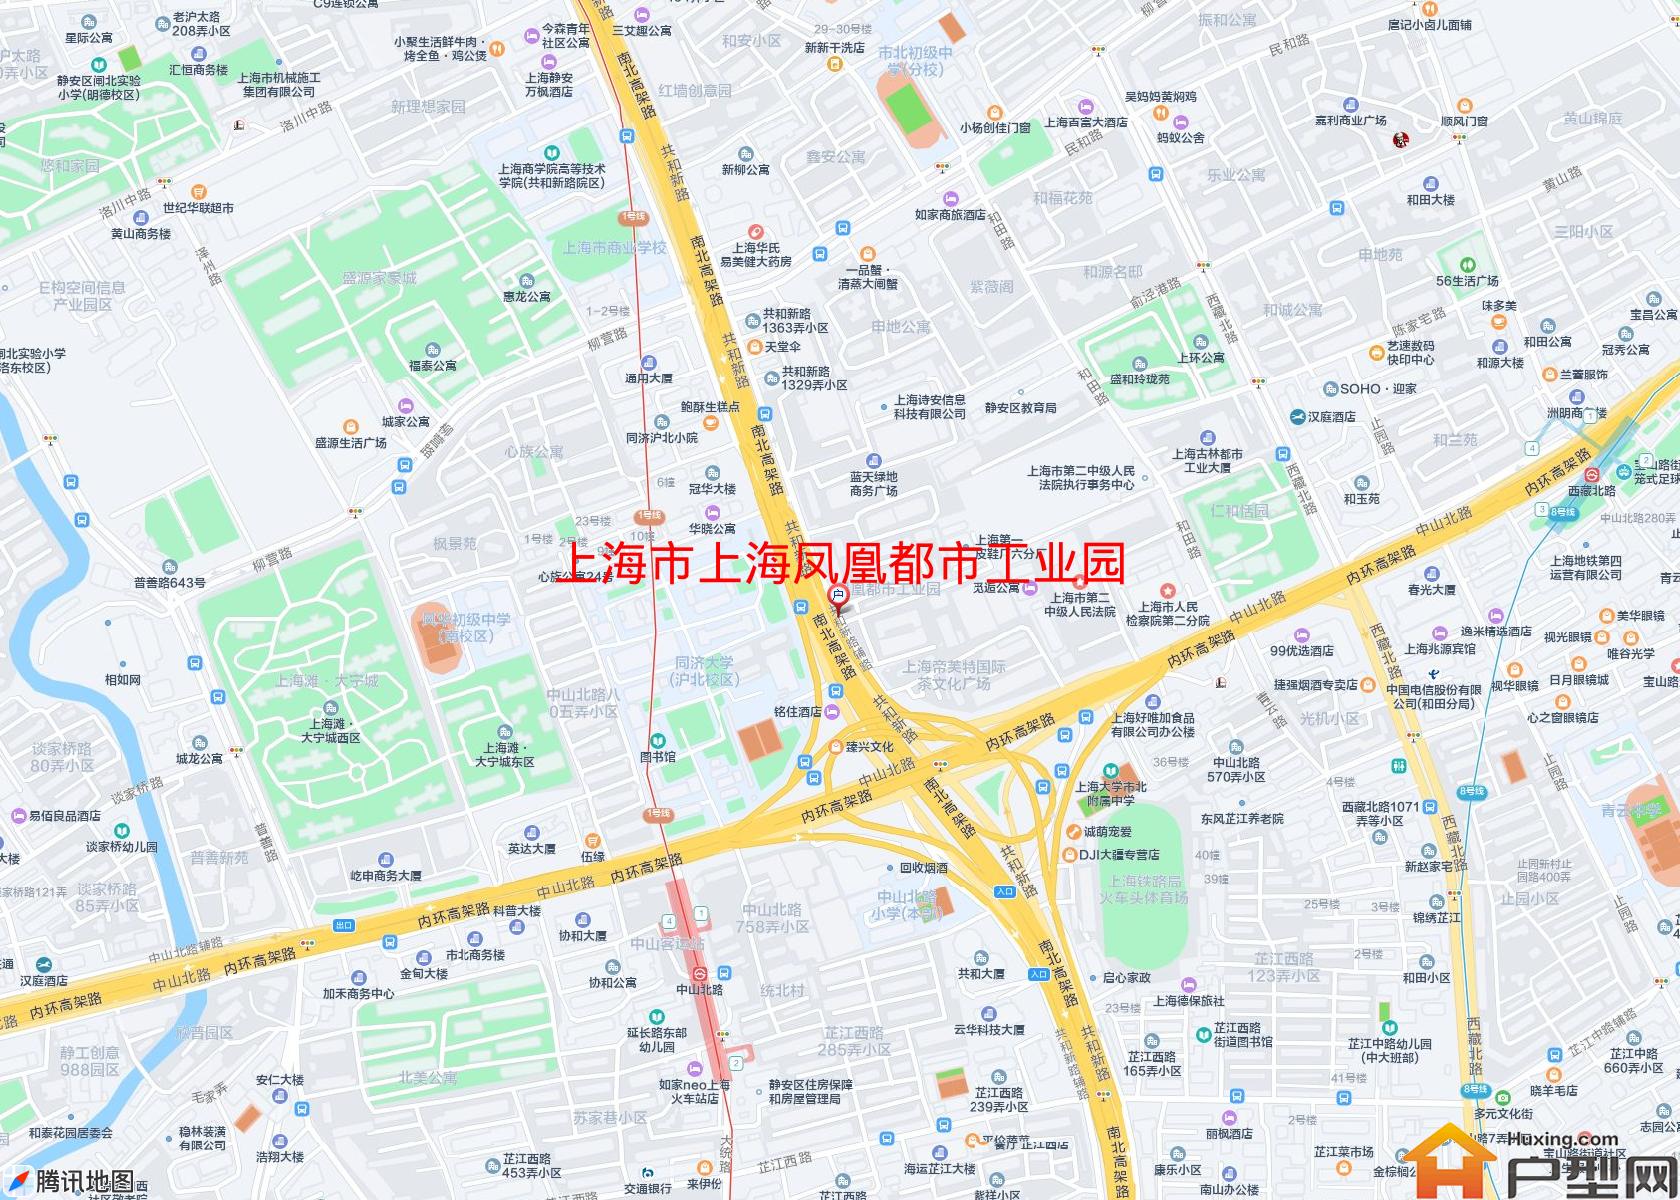 上海凤凰都市工业园小区 - 户型网